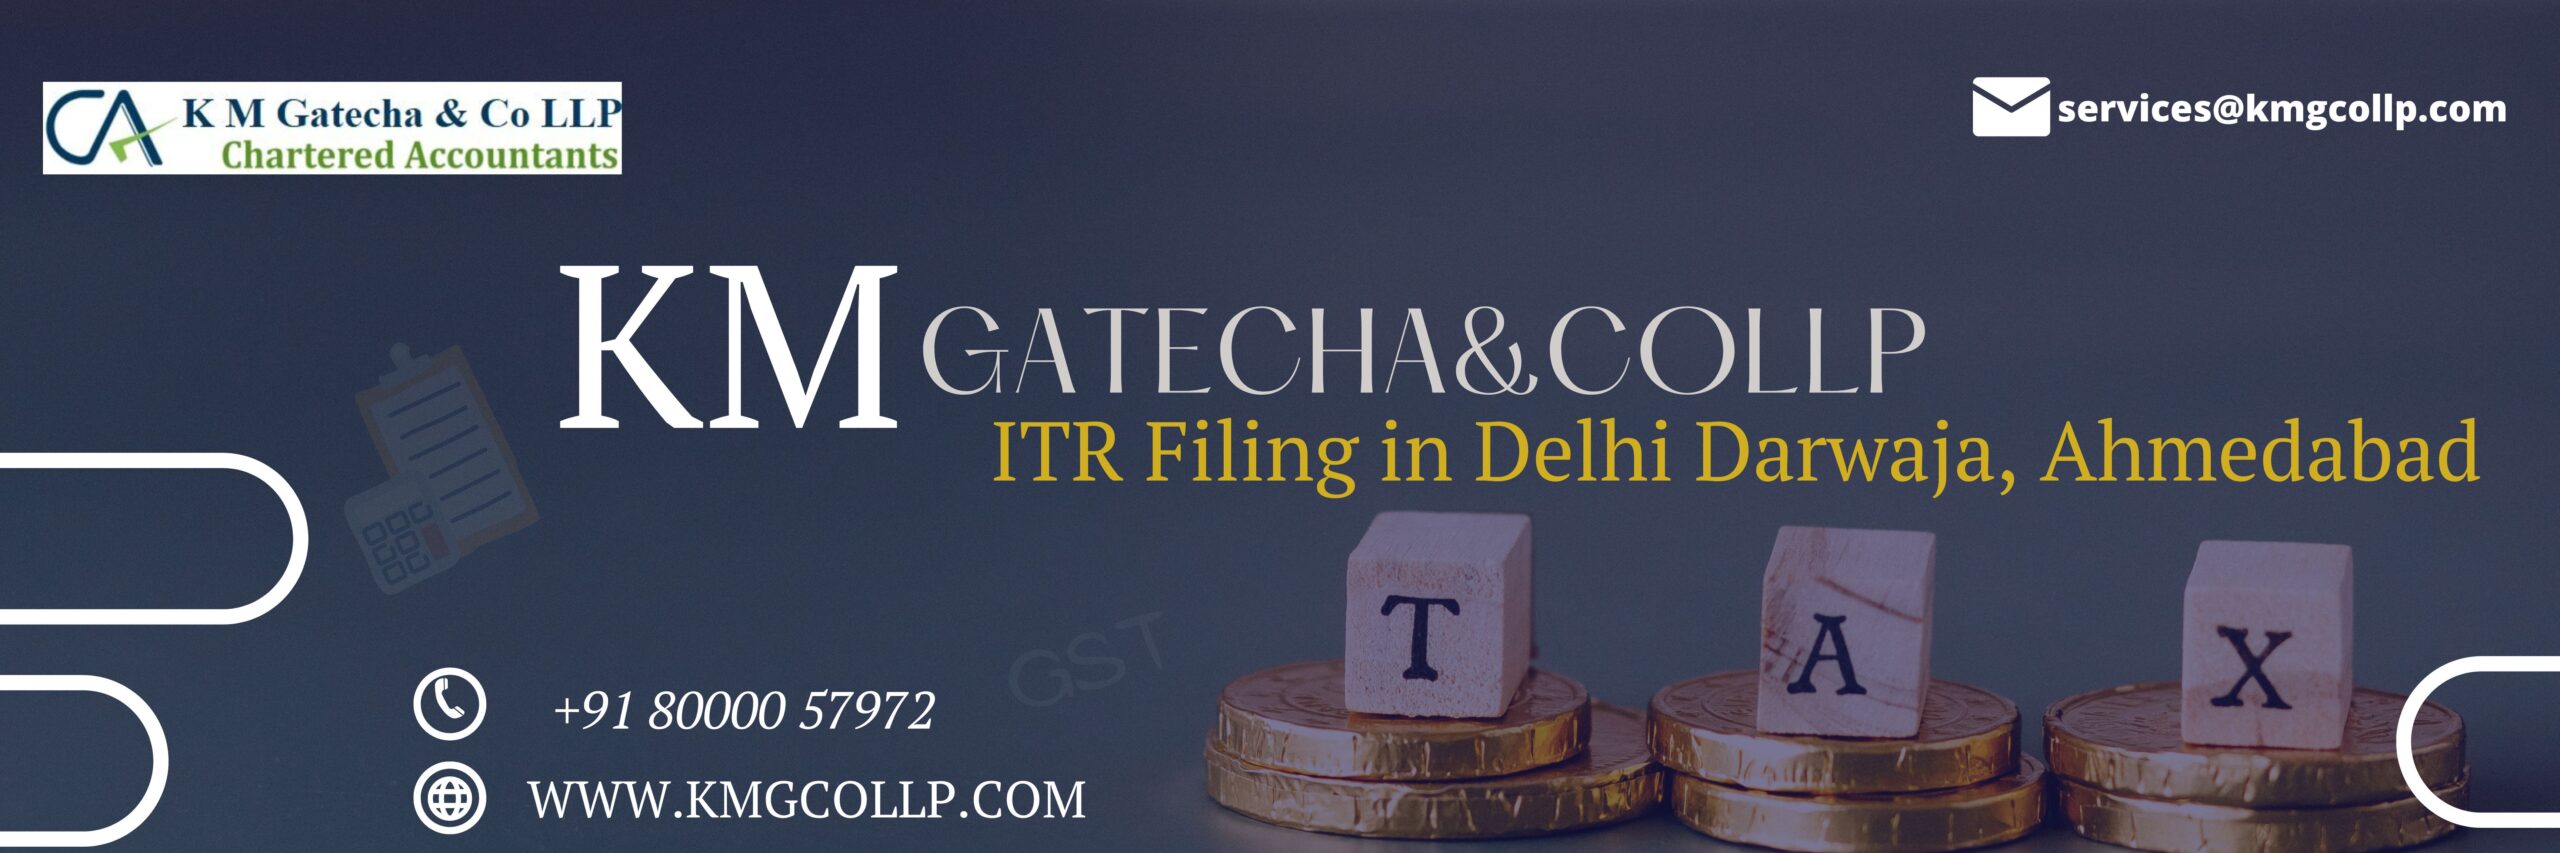 ITR Filing in Delhi Darwaja, Ahmedabad